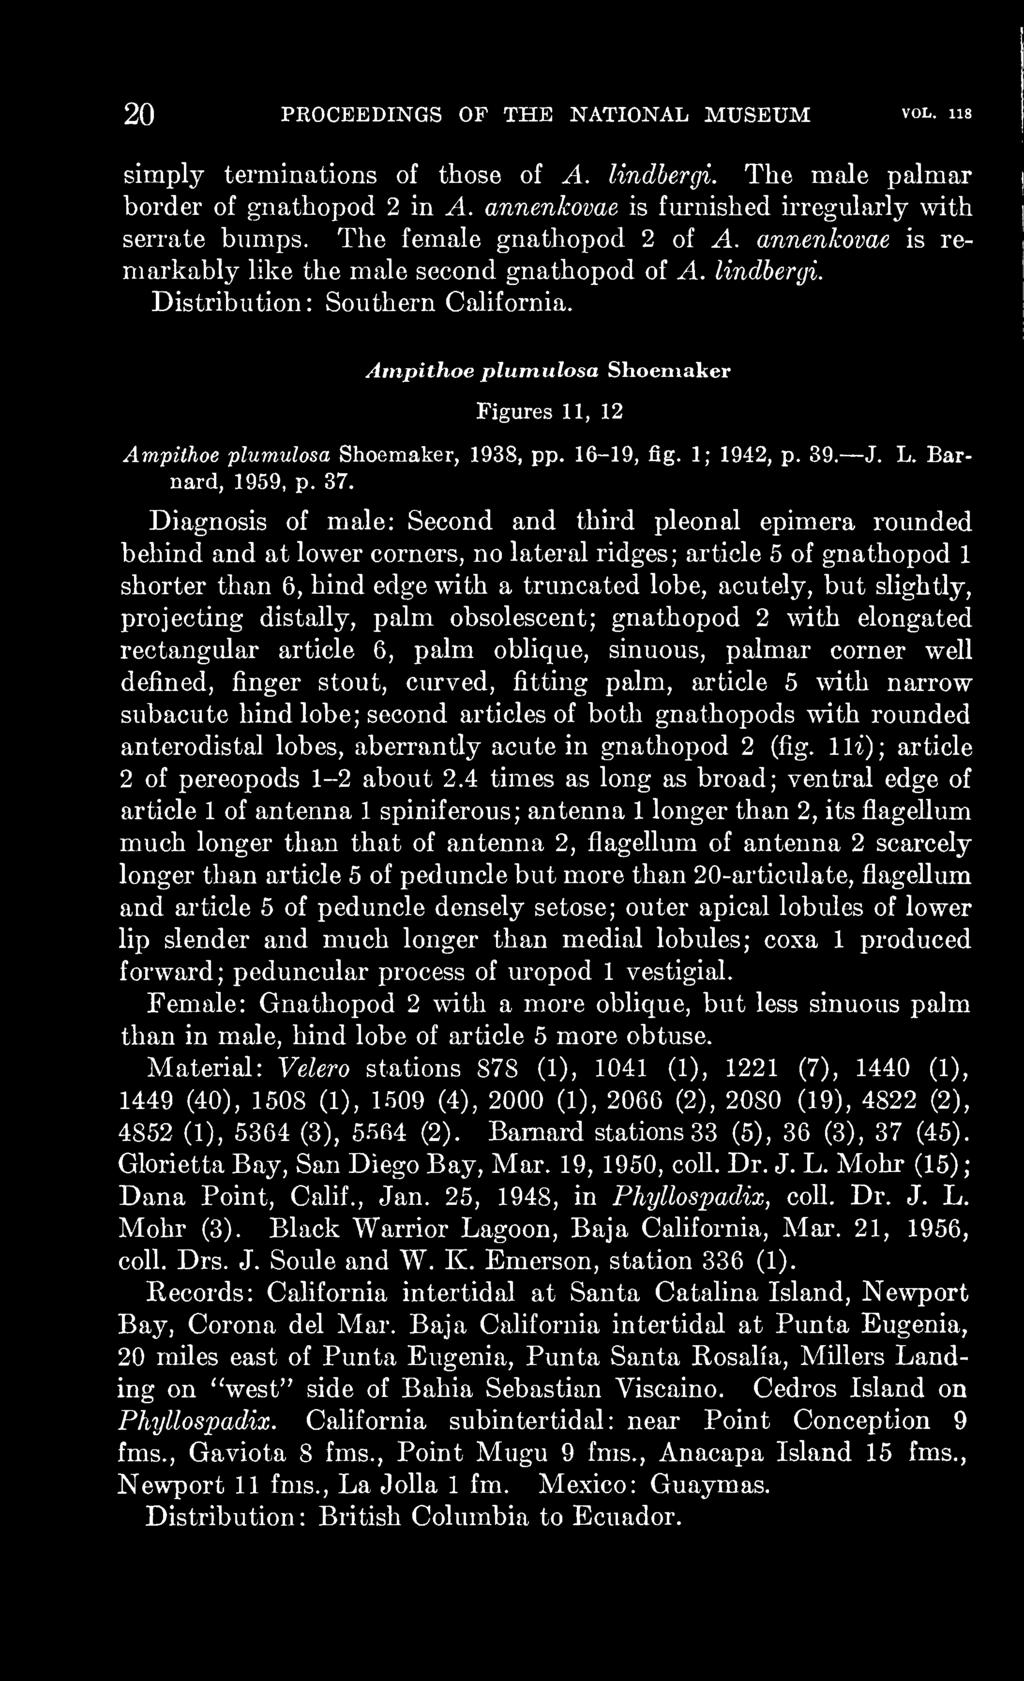 Atnpithoe plumulosa Shoemaker Figures 11, 12 Ampithoe plumulosa Shoemaker, 1938, pp. 16-19, fig. 1; 1942, p. 39. J. L. Barnard, 1959, p. 37.